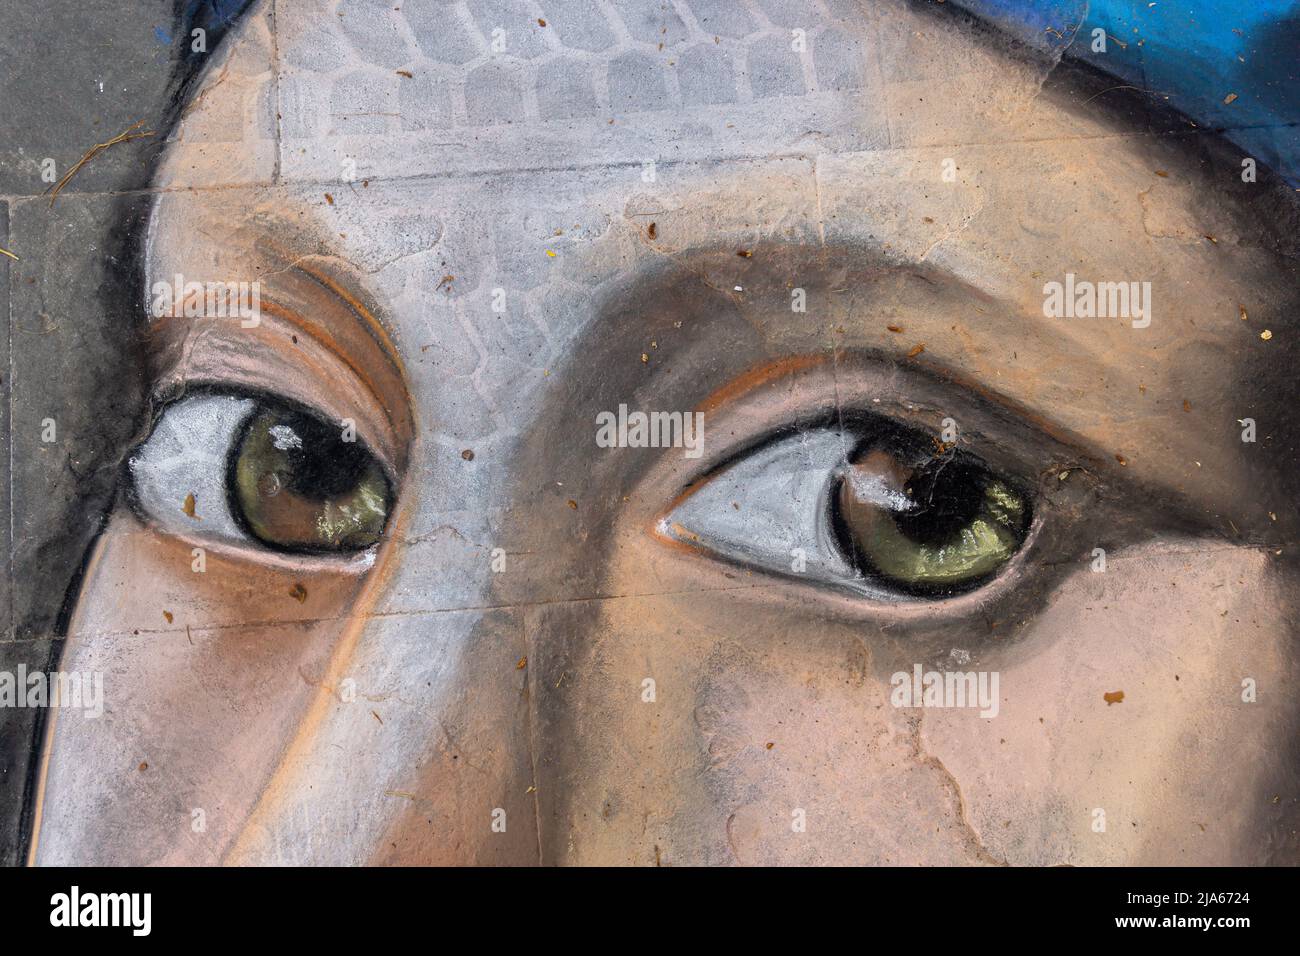 Grado, Italie - 8 juillet 2021: La peinture de rue de la fille, yeux brun foncé et coiffures bleues, fait avec la peinture sur asphalte Banque D'Images